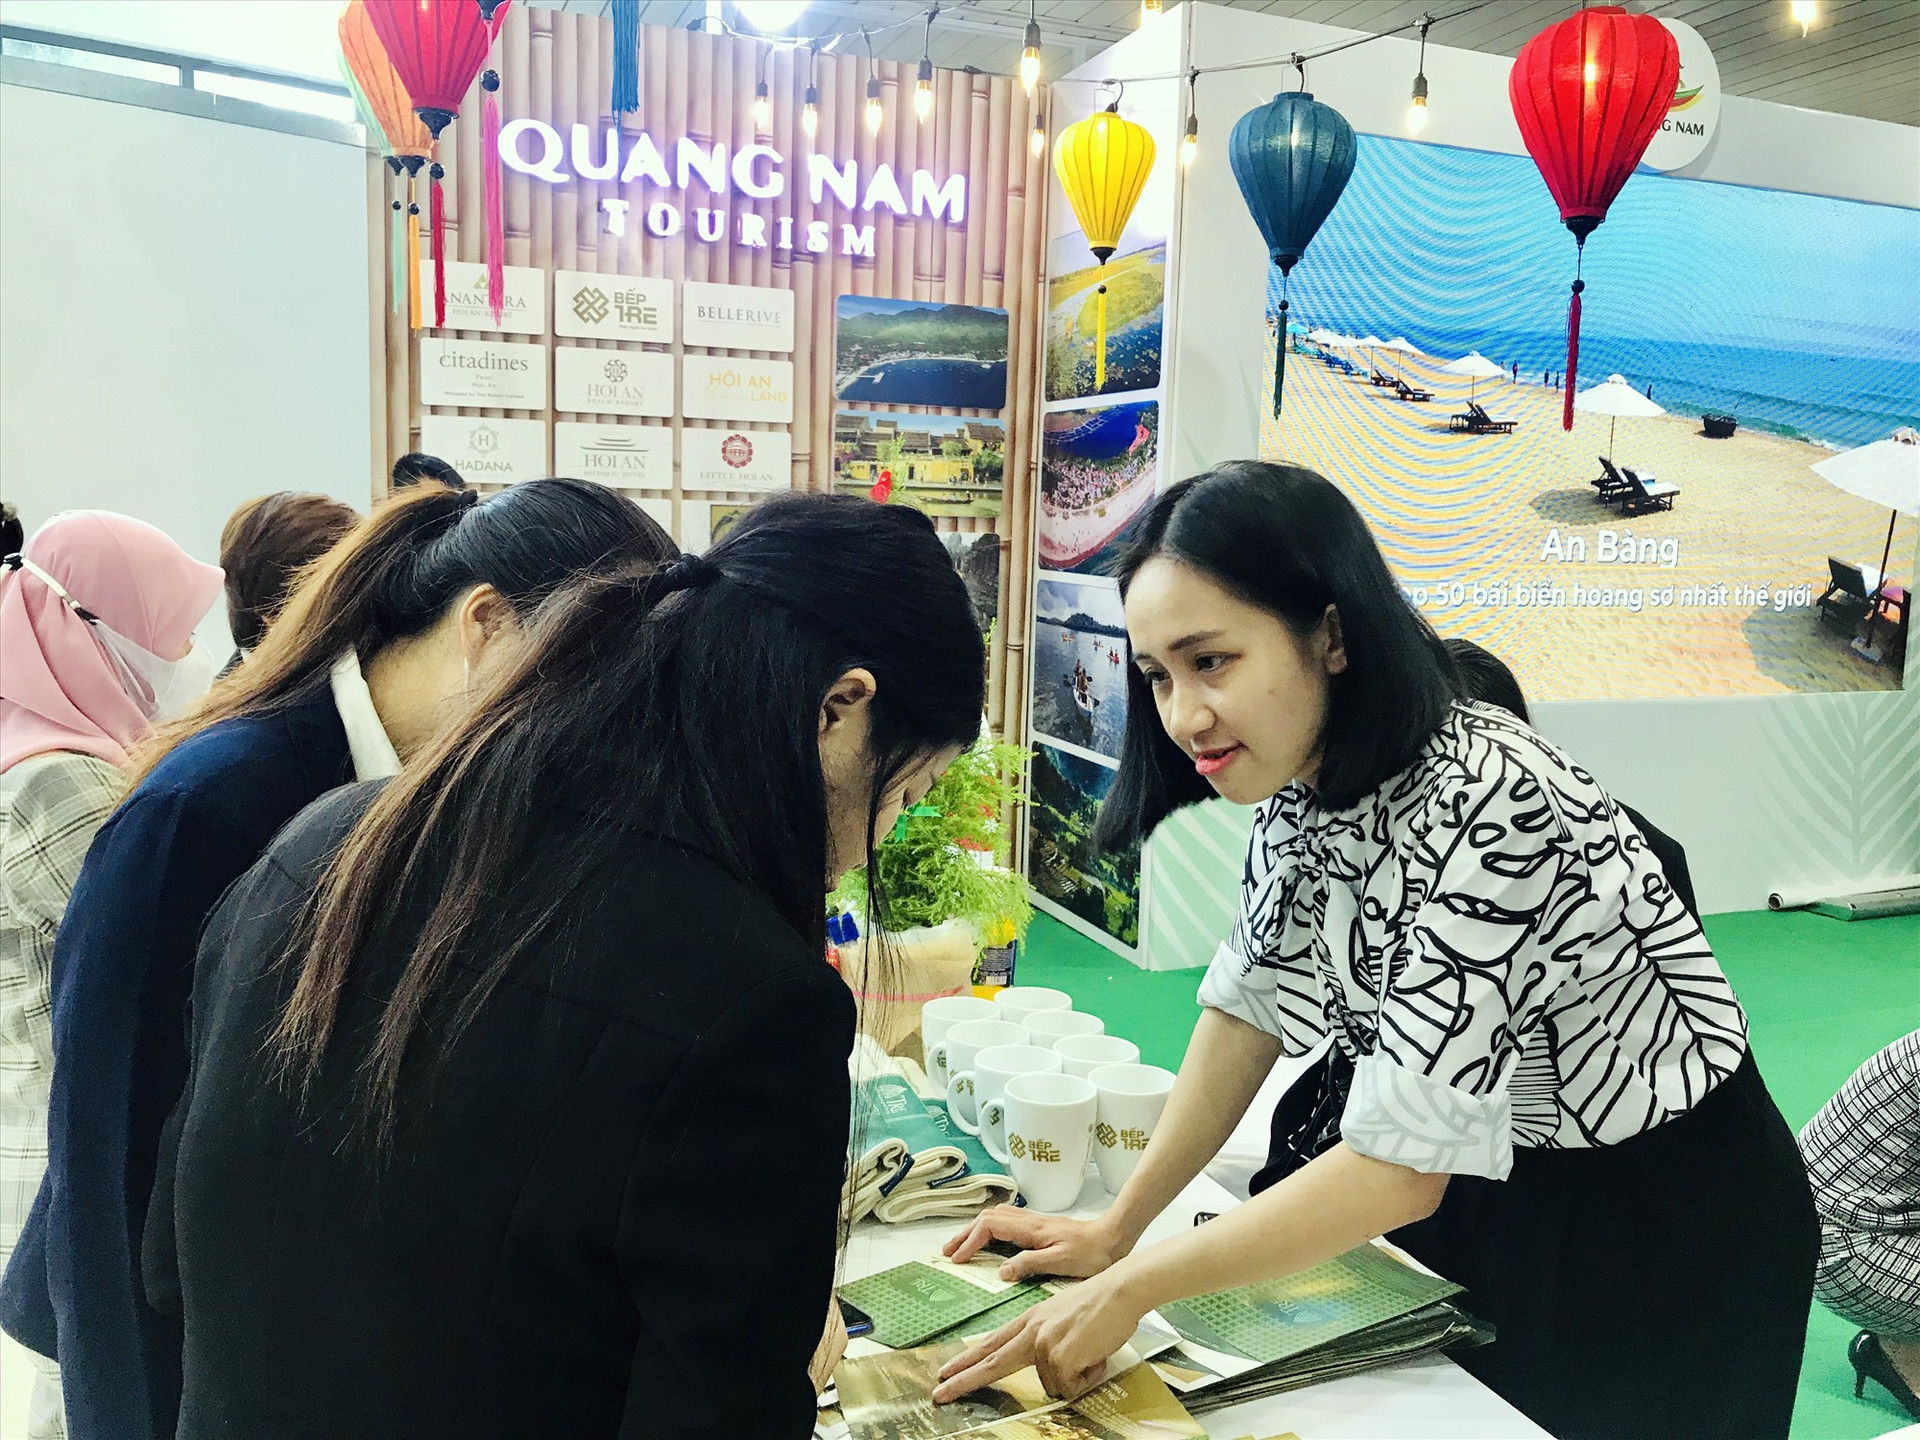 Nâng cao chất lượng lao động du lịch là nhu cầu bức thiết trong bối cảnh Quảng Nam đang hướng đến du lịch xanh. Ảnh: Q.T